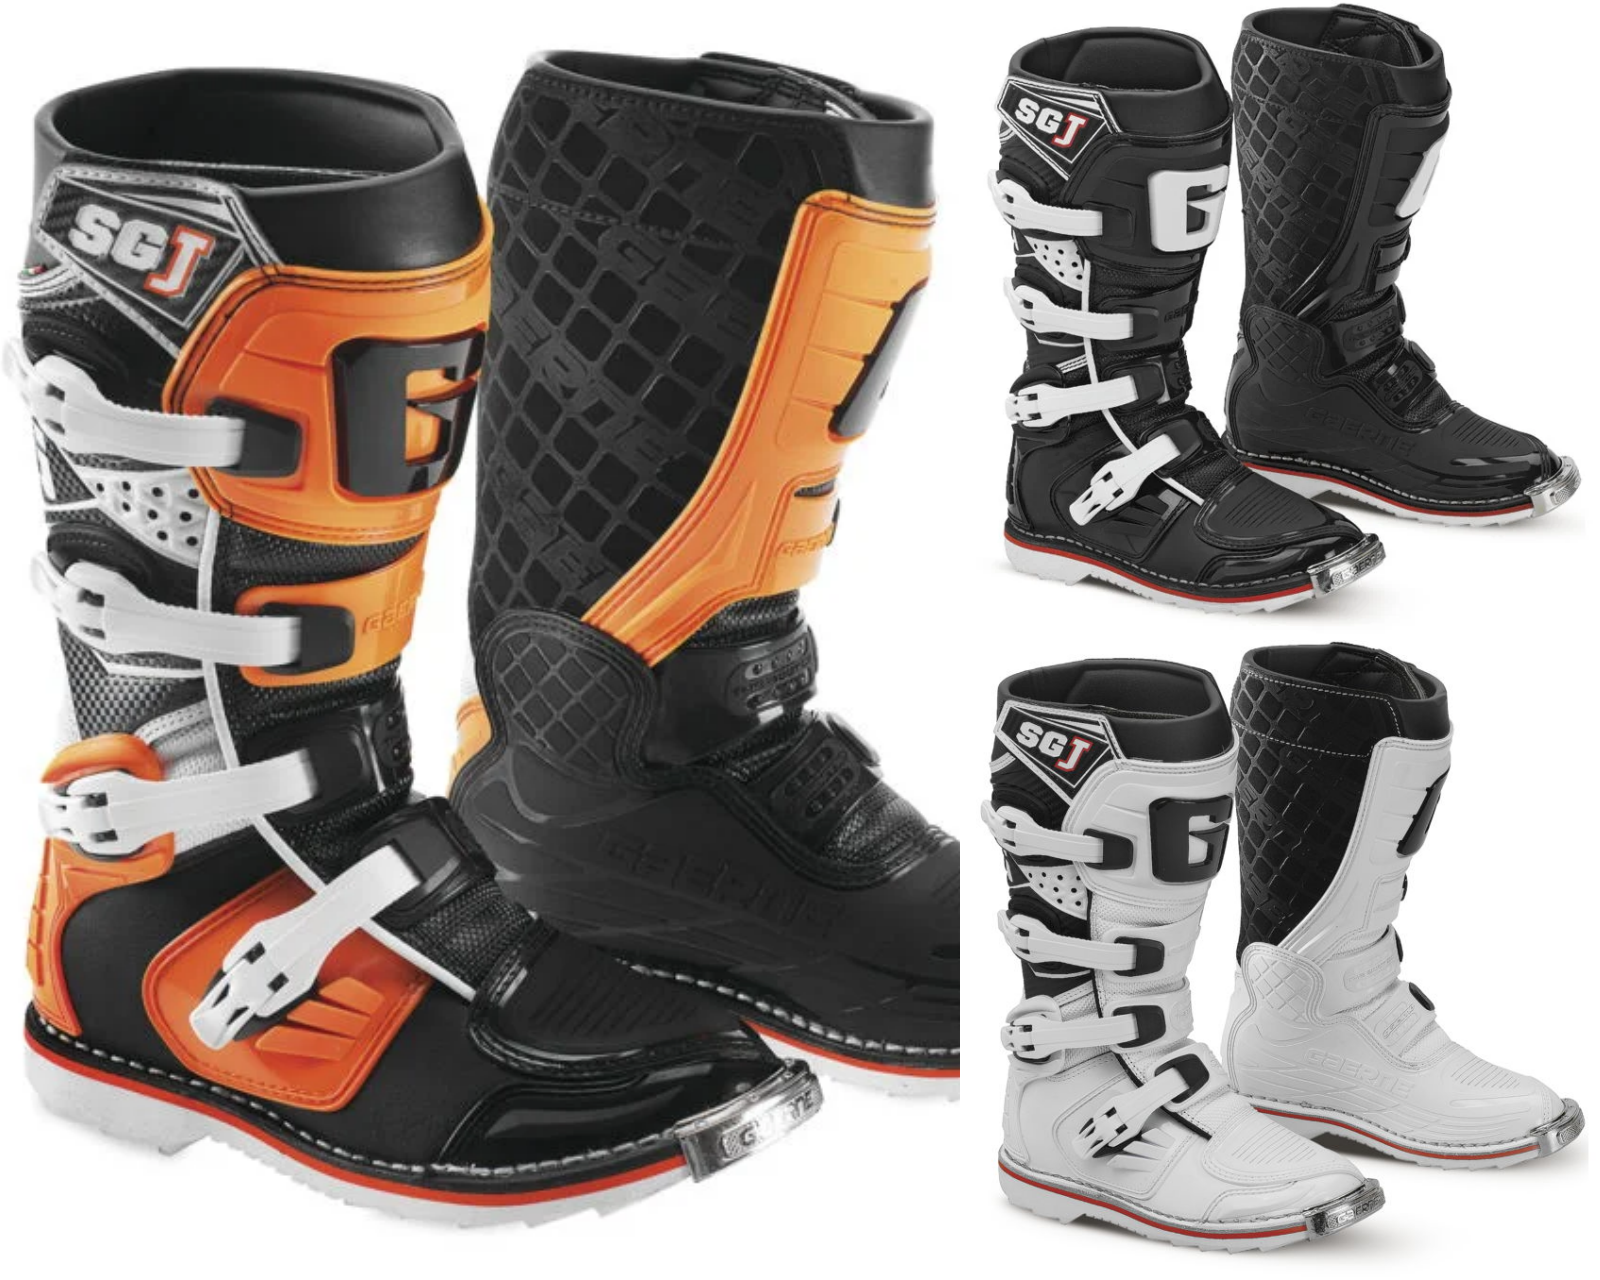 Gaerne Youth Sgj Sg-j Mx Atv Offroad Motocross Racing Boots White Black/orange